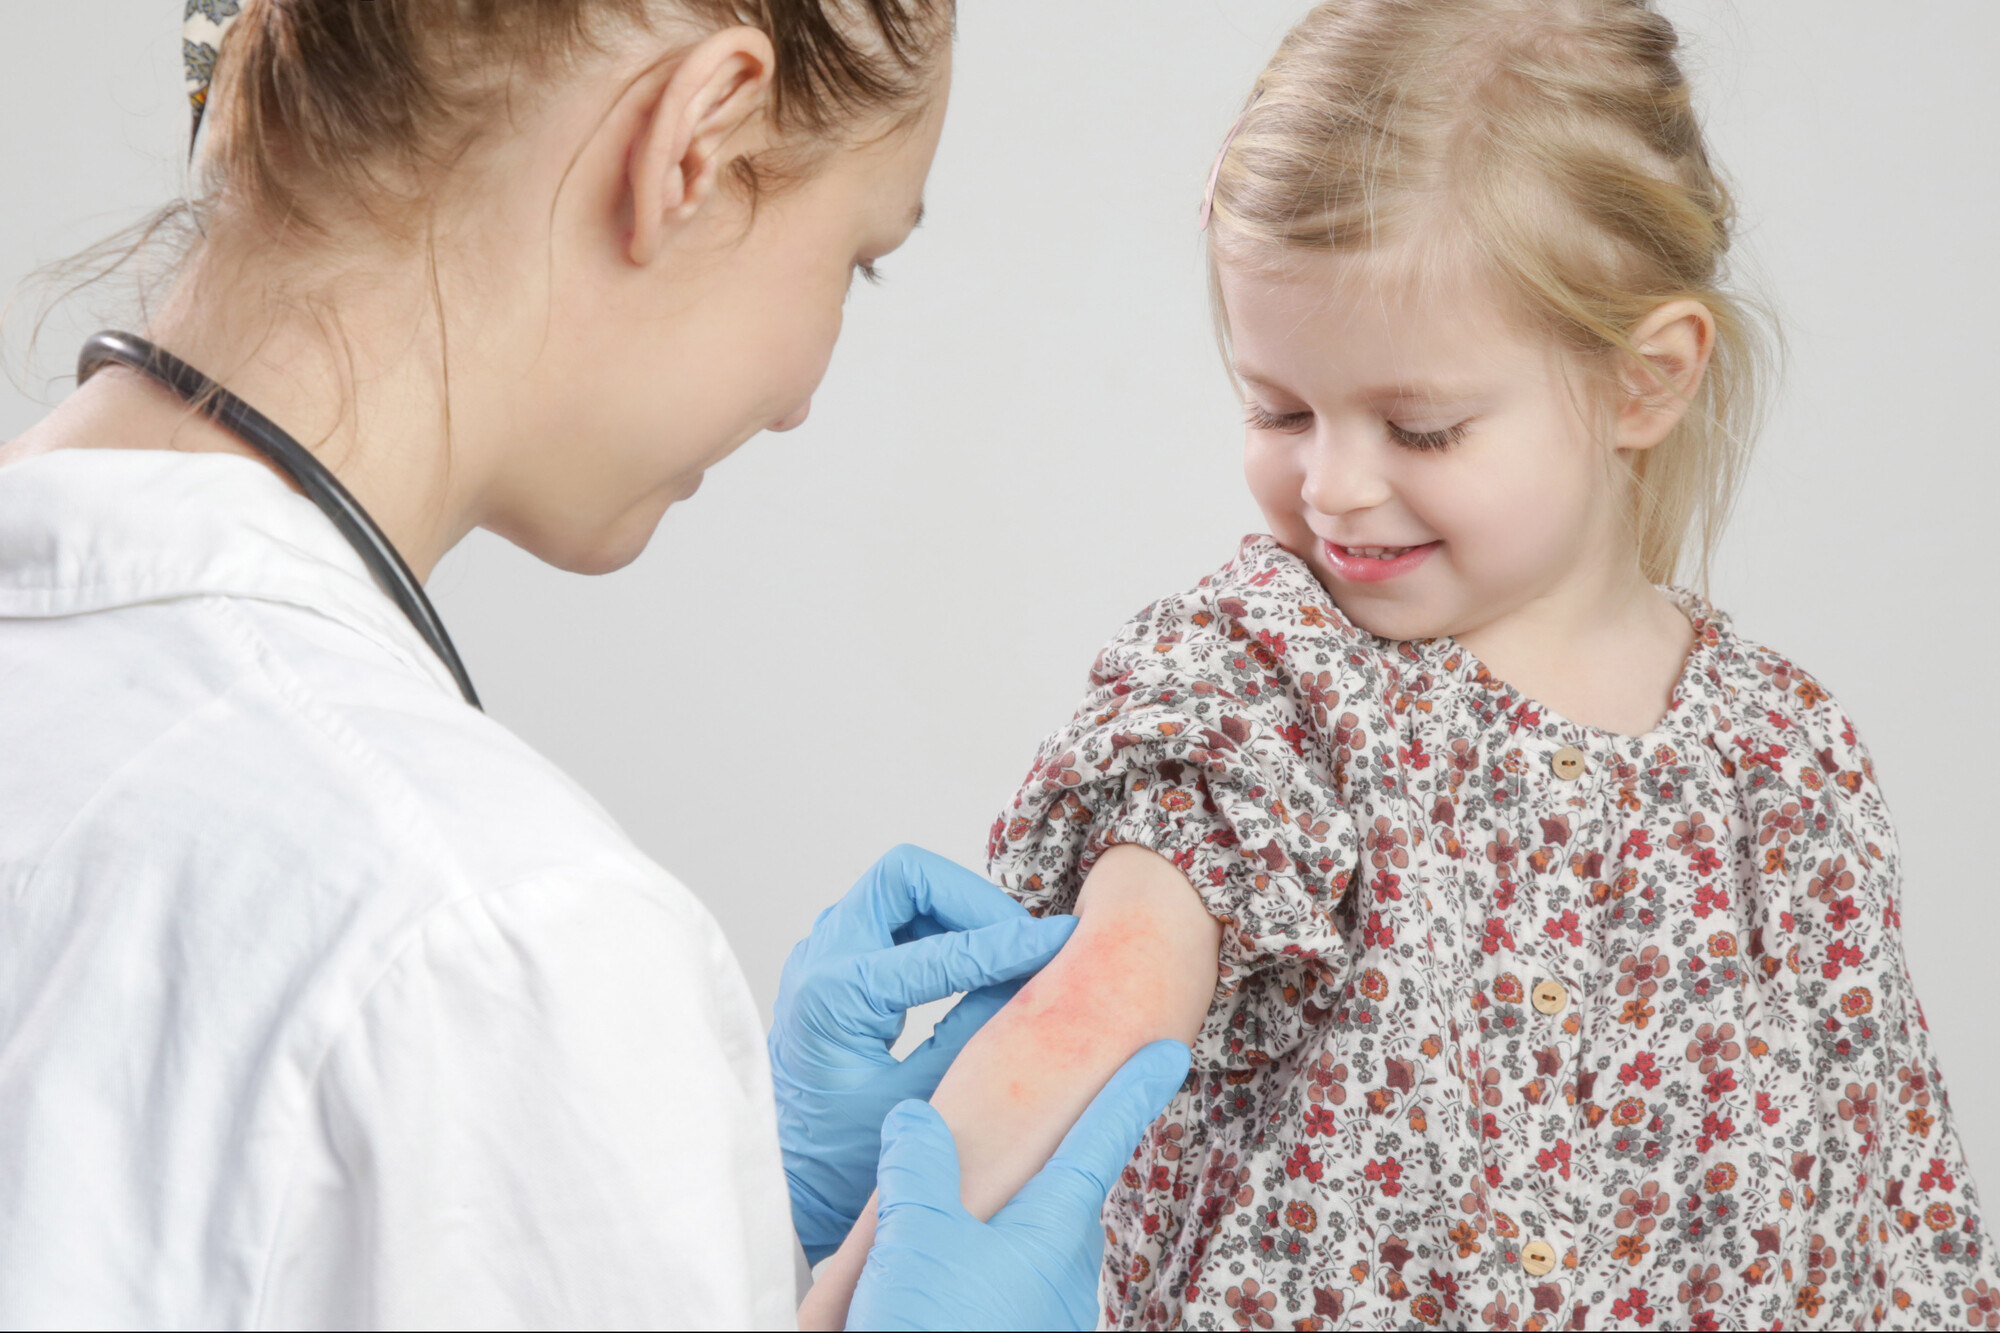 Hautausschläge bei Kindern sind meist Begleiterscheinungen viraler Infektionen. Wichtig ist, auf Lokalisation, Effloreszenz und den Verlauf zu achten.